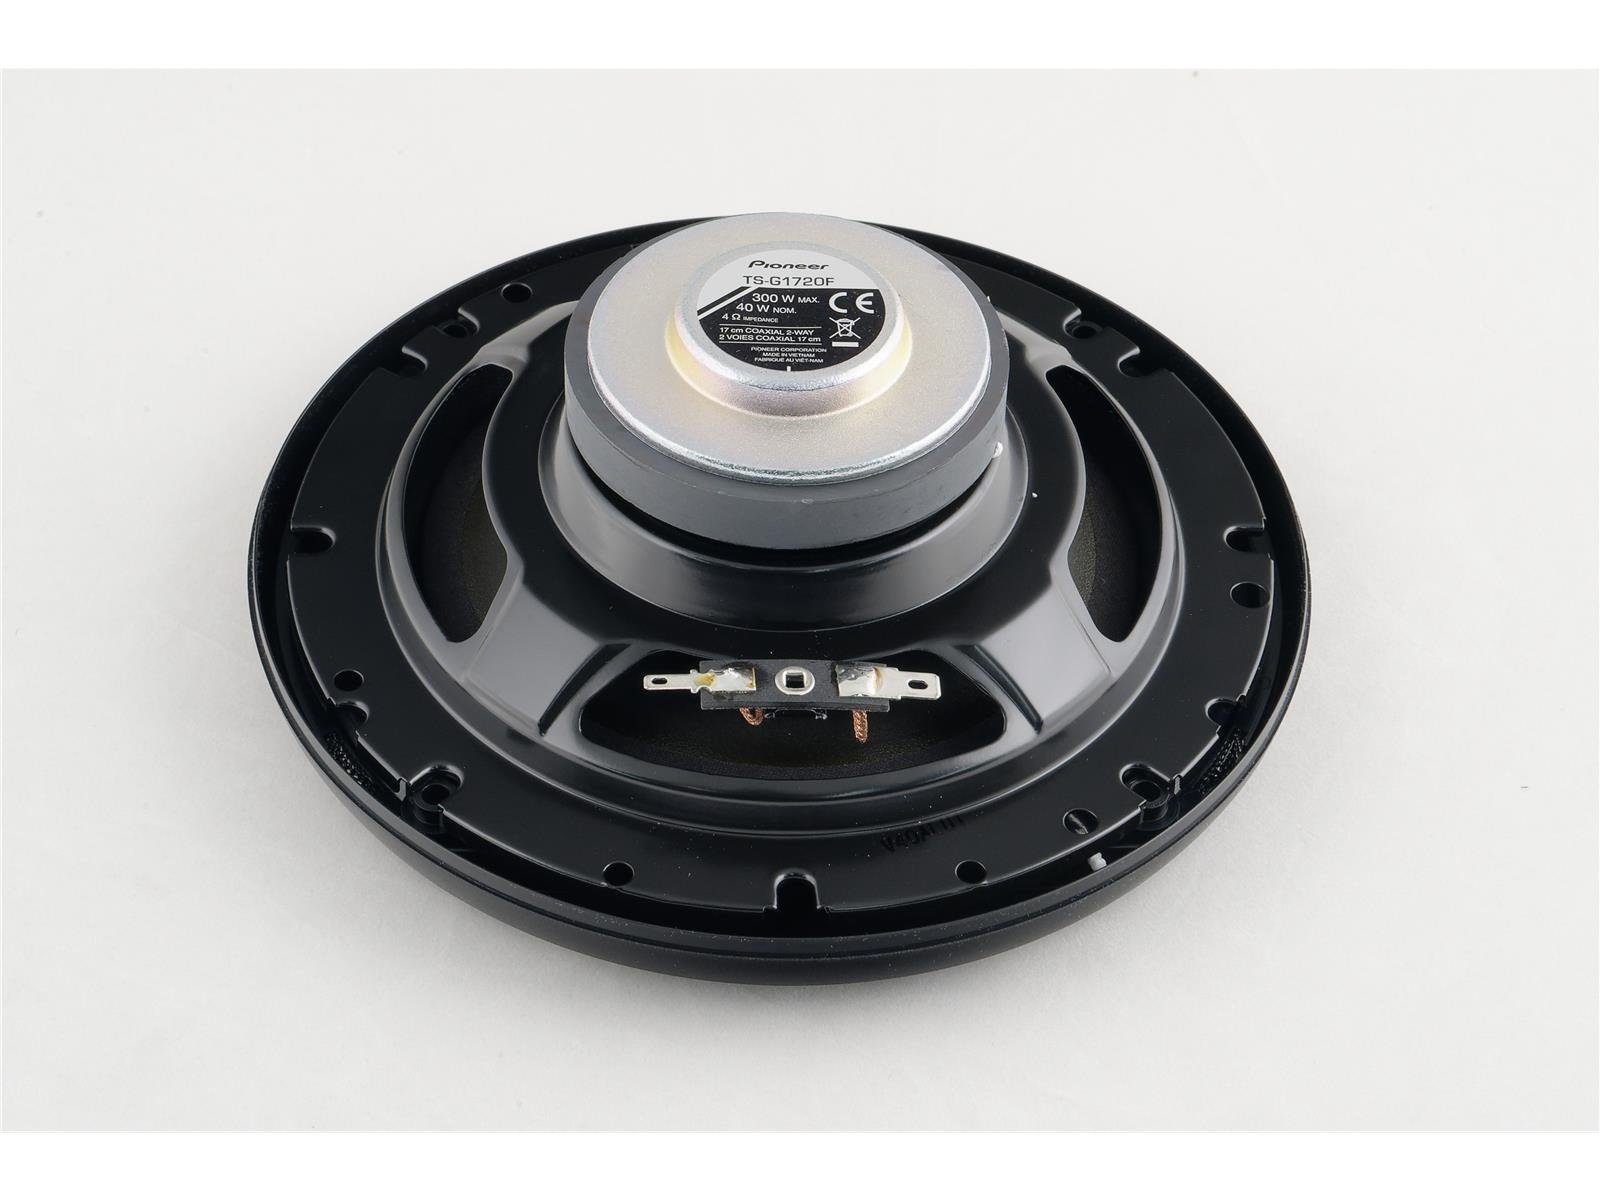 Audi passend Lautsprecher vorne C5 für Pioneer A6 Pioneer hinten oder Auto-Lautsprecher